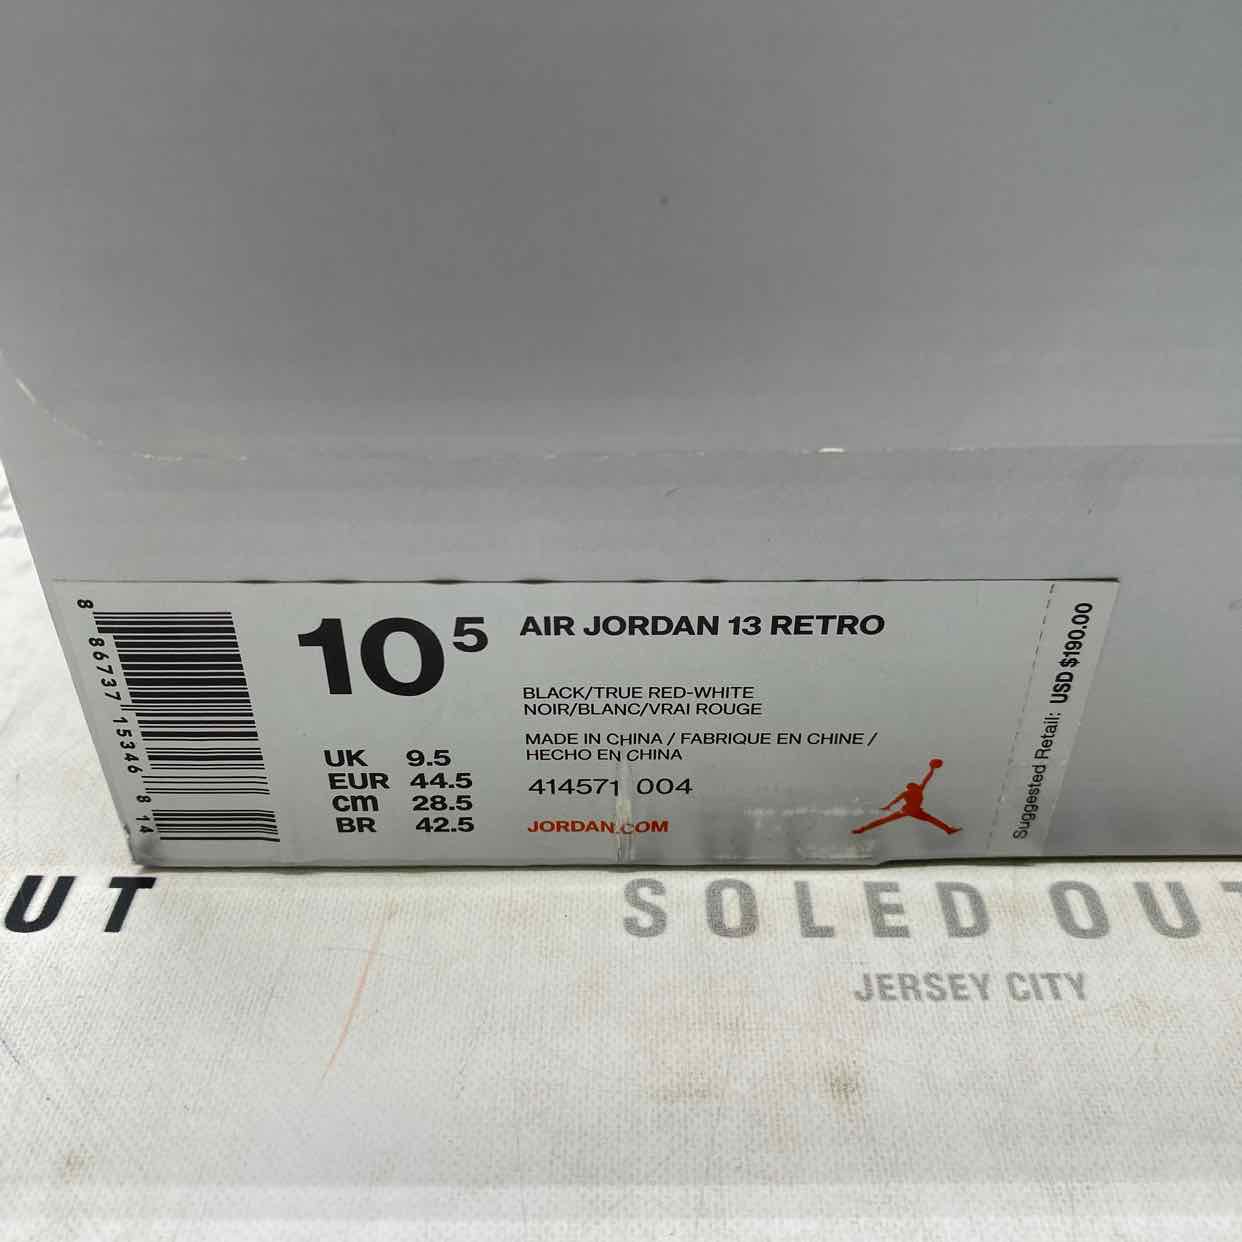 Air Jordan 13 Retro &quot;Bred&quot; 2017 Used Size 10.5